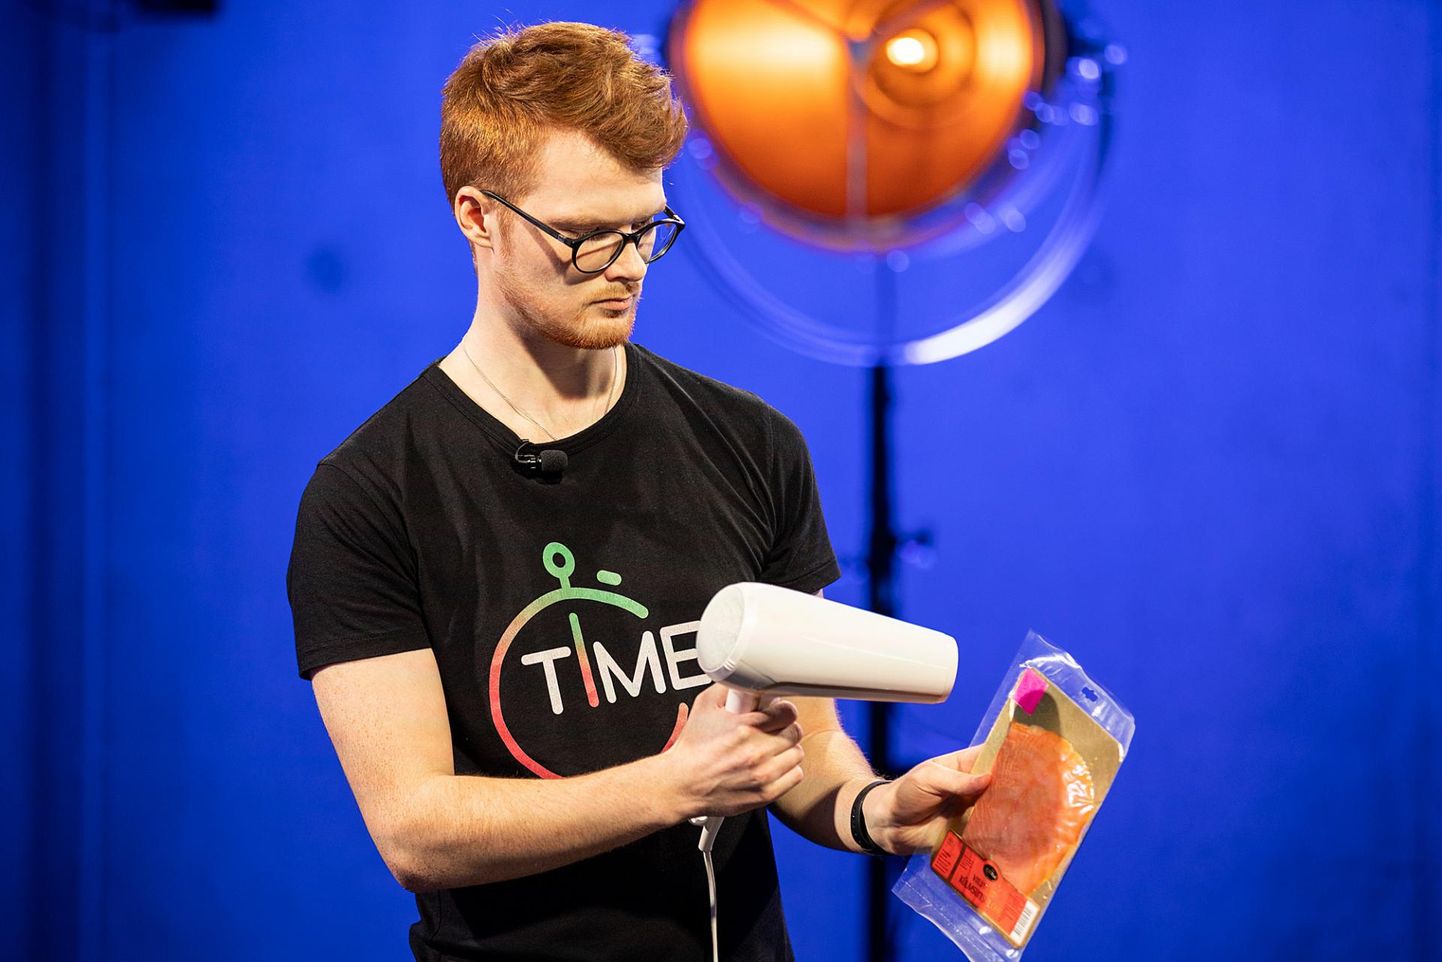 Ajujahi 2019. aasta võitis idee Timey, mis toodab keemilisi indikaatoreid toidukaupade jälgimiseks. Pildil üks ettevõtte kaasasutajaid Martin Möllits telesaate žürii ees ideed esitlemas.